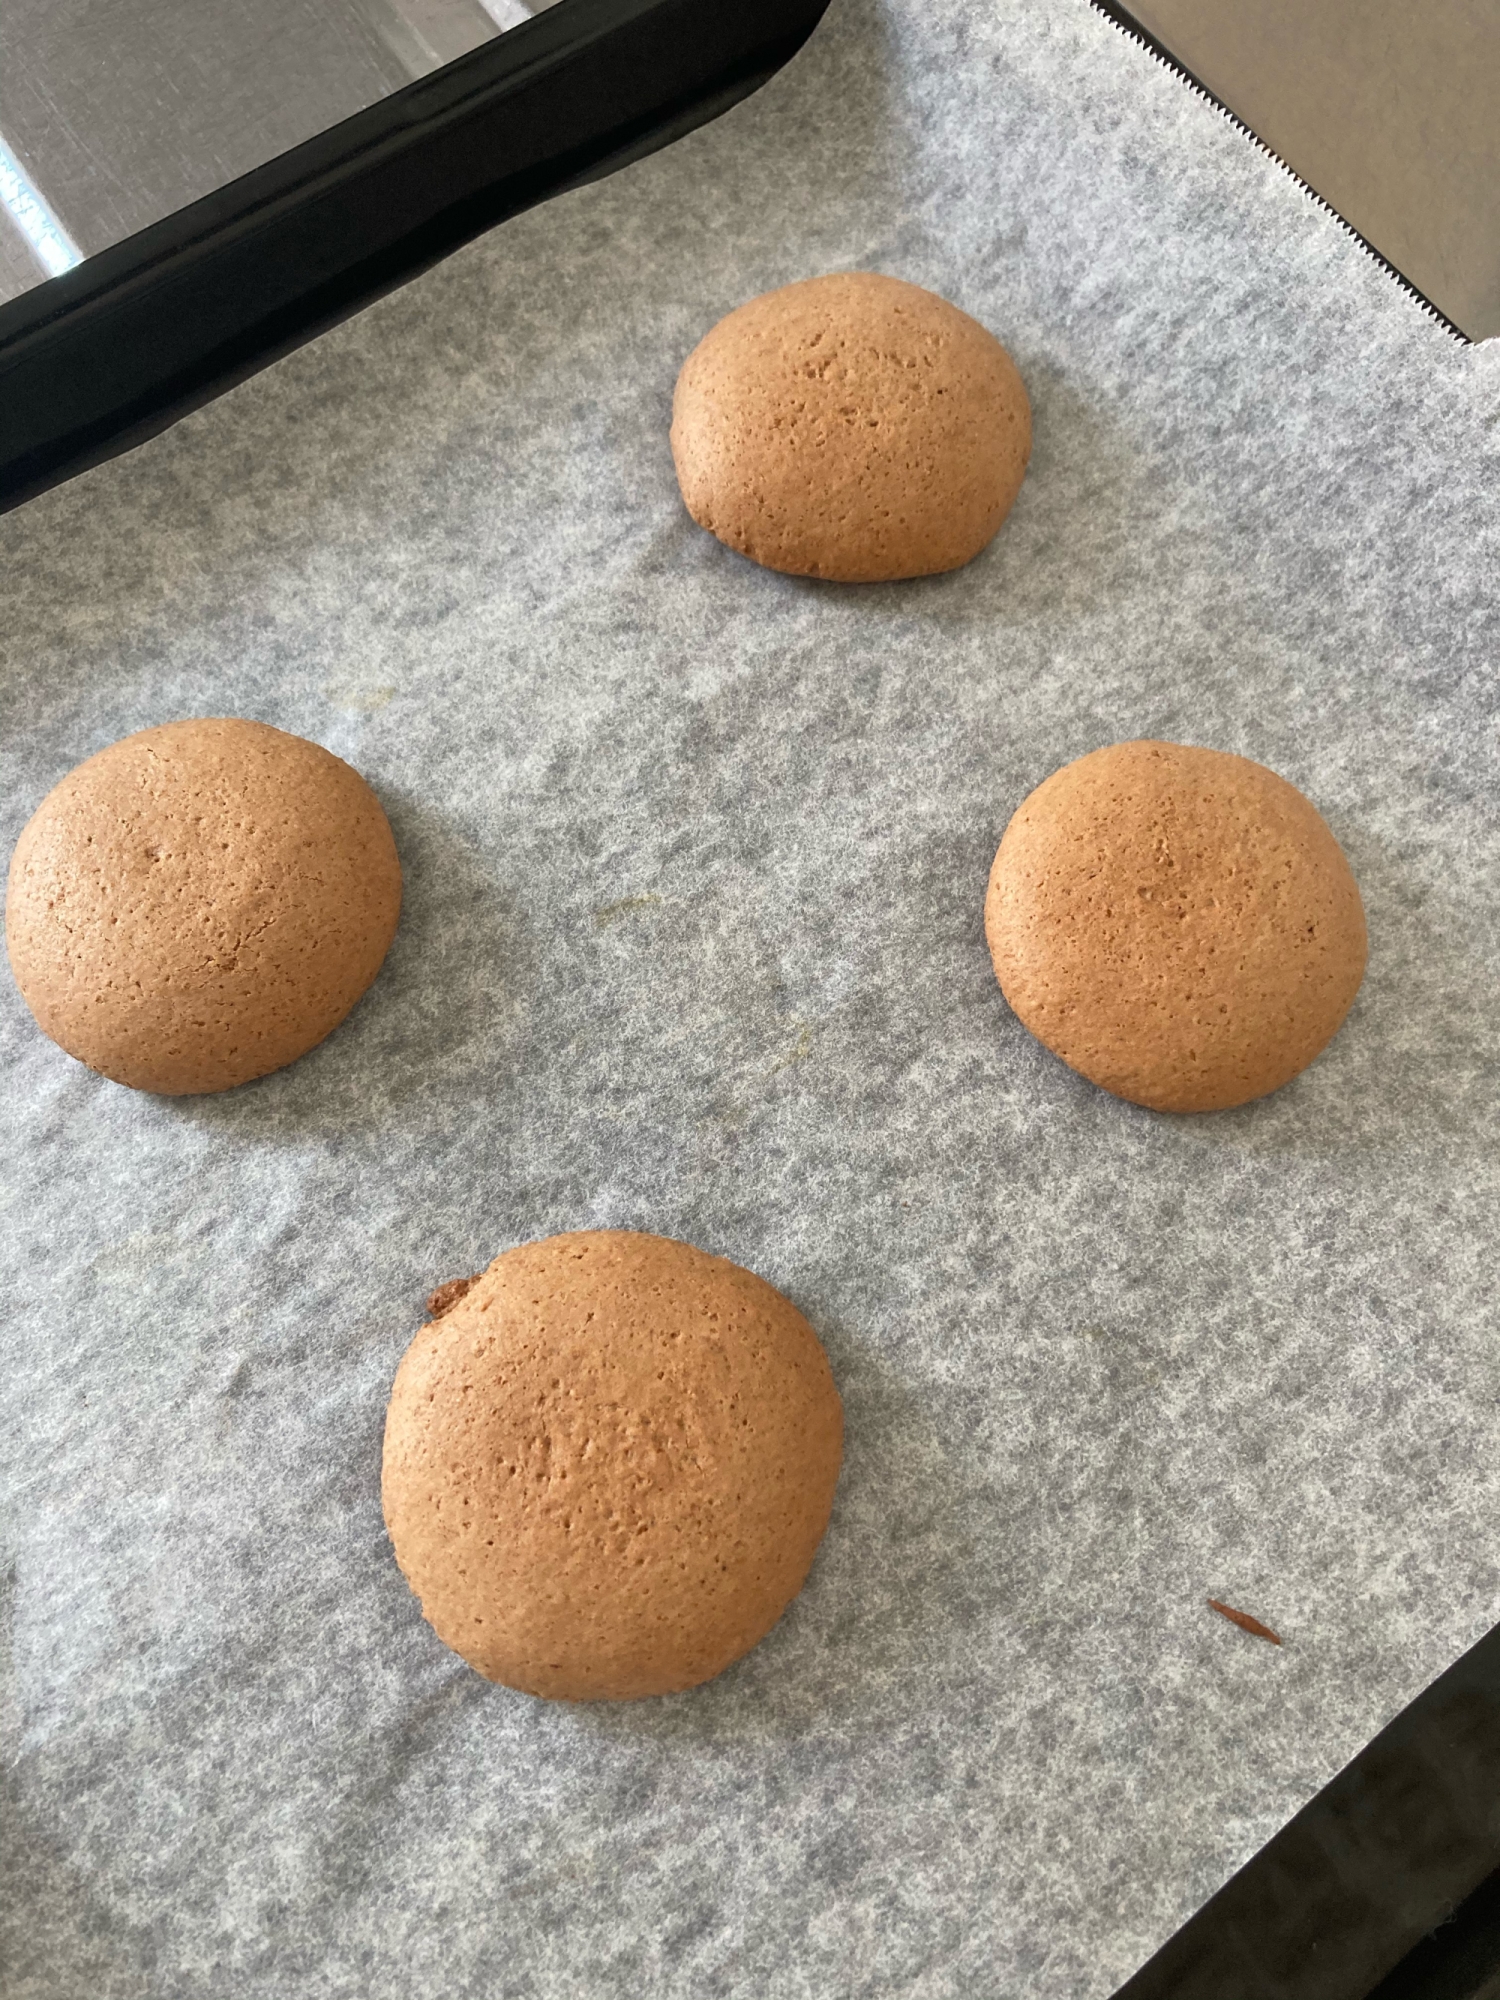 ホットケーキミックスで作るココアクッキー